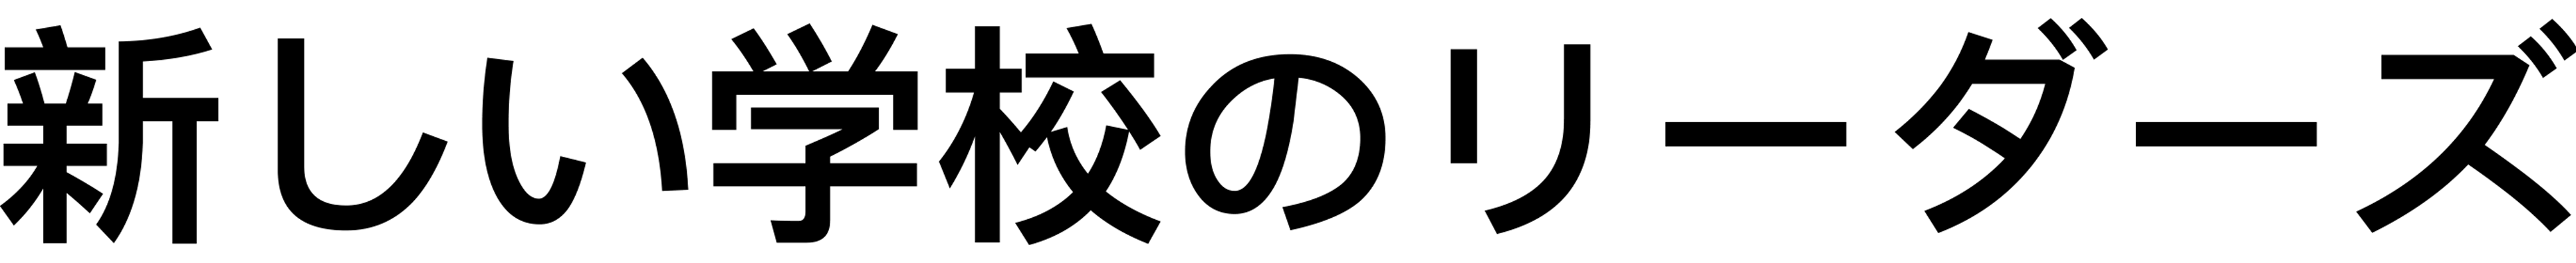 atarashi gakko logo